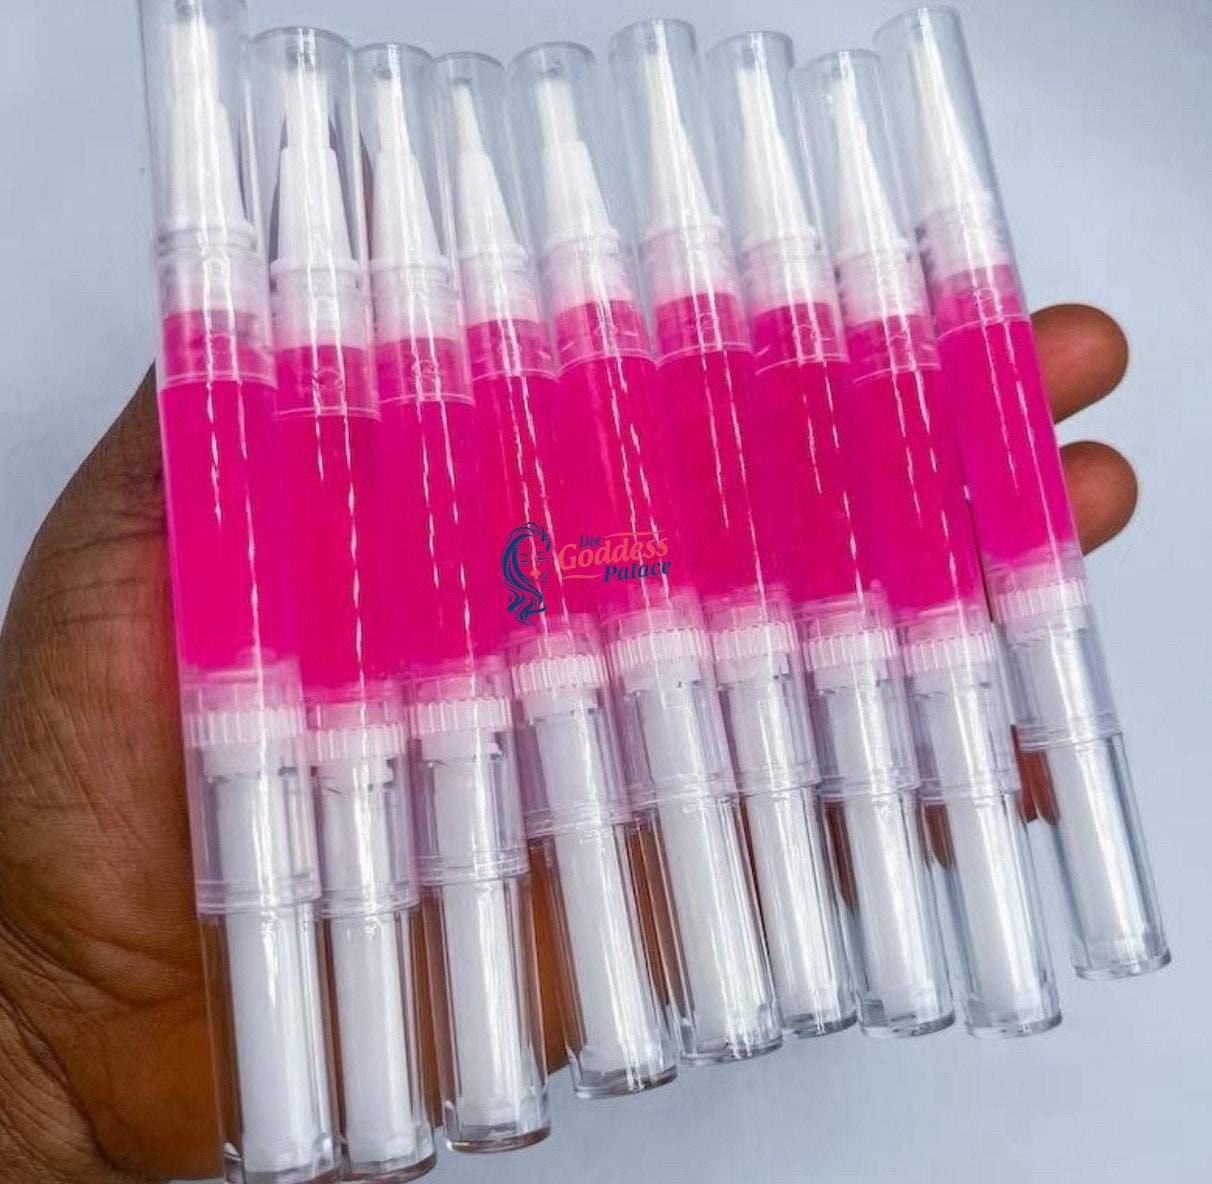 Strawberry Twist Pen Lipglosses / Moisturizing Hydrating Lipgloss - Etsy